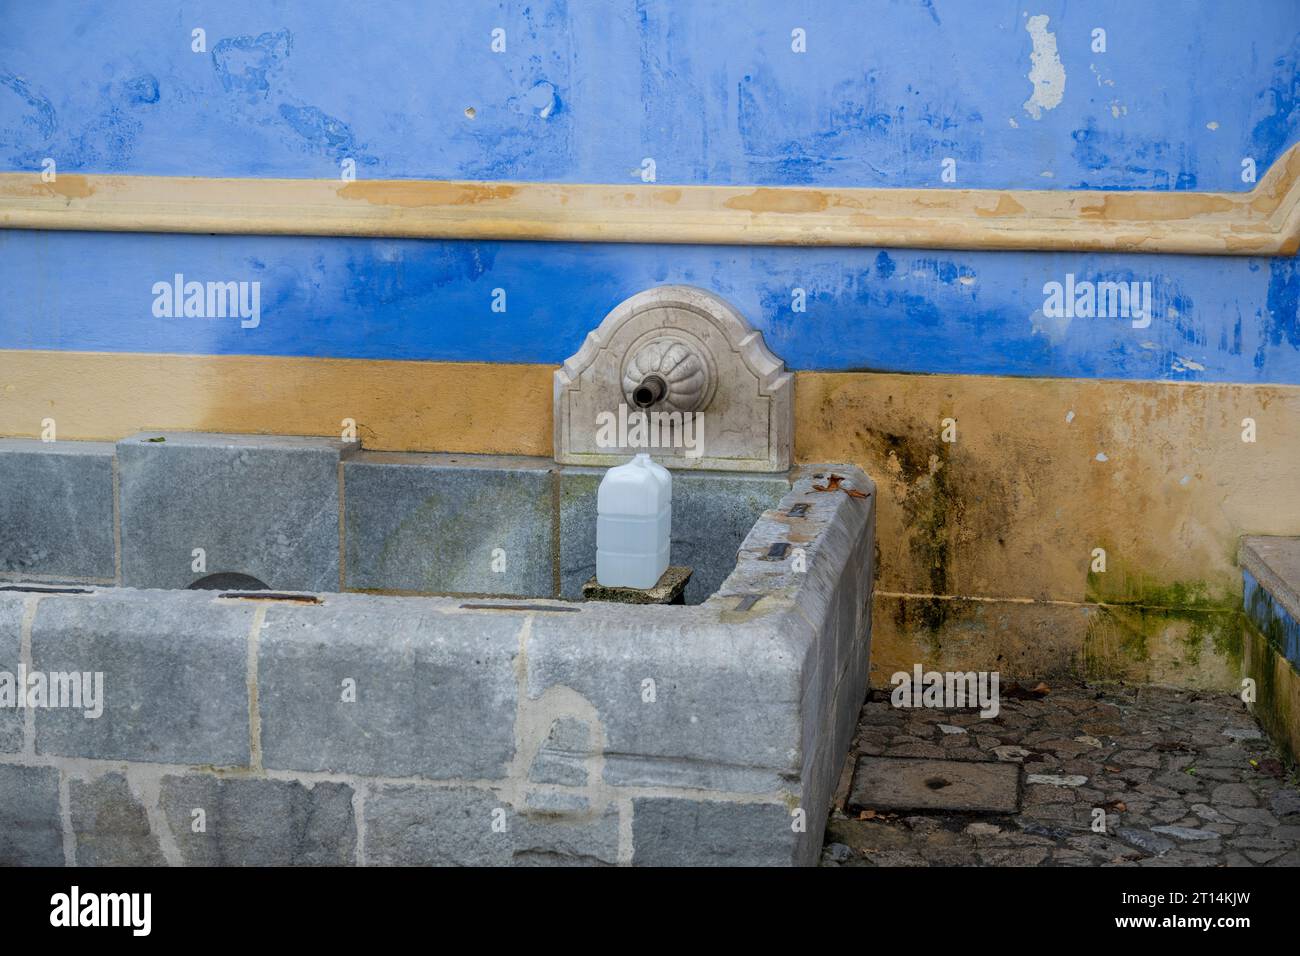 Una donna del posto riempie bottiglie d'acqua di plastica presso la fontana Sabuga a Sintra, Sintra è una città e un comune nella regione della grande Lisbona in Portogallo, Foto Stock